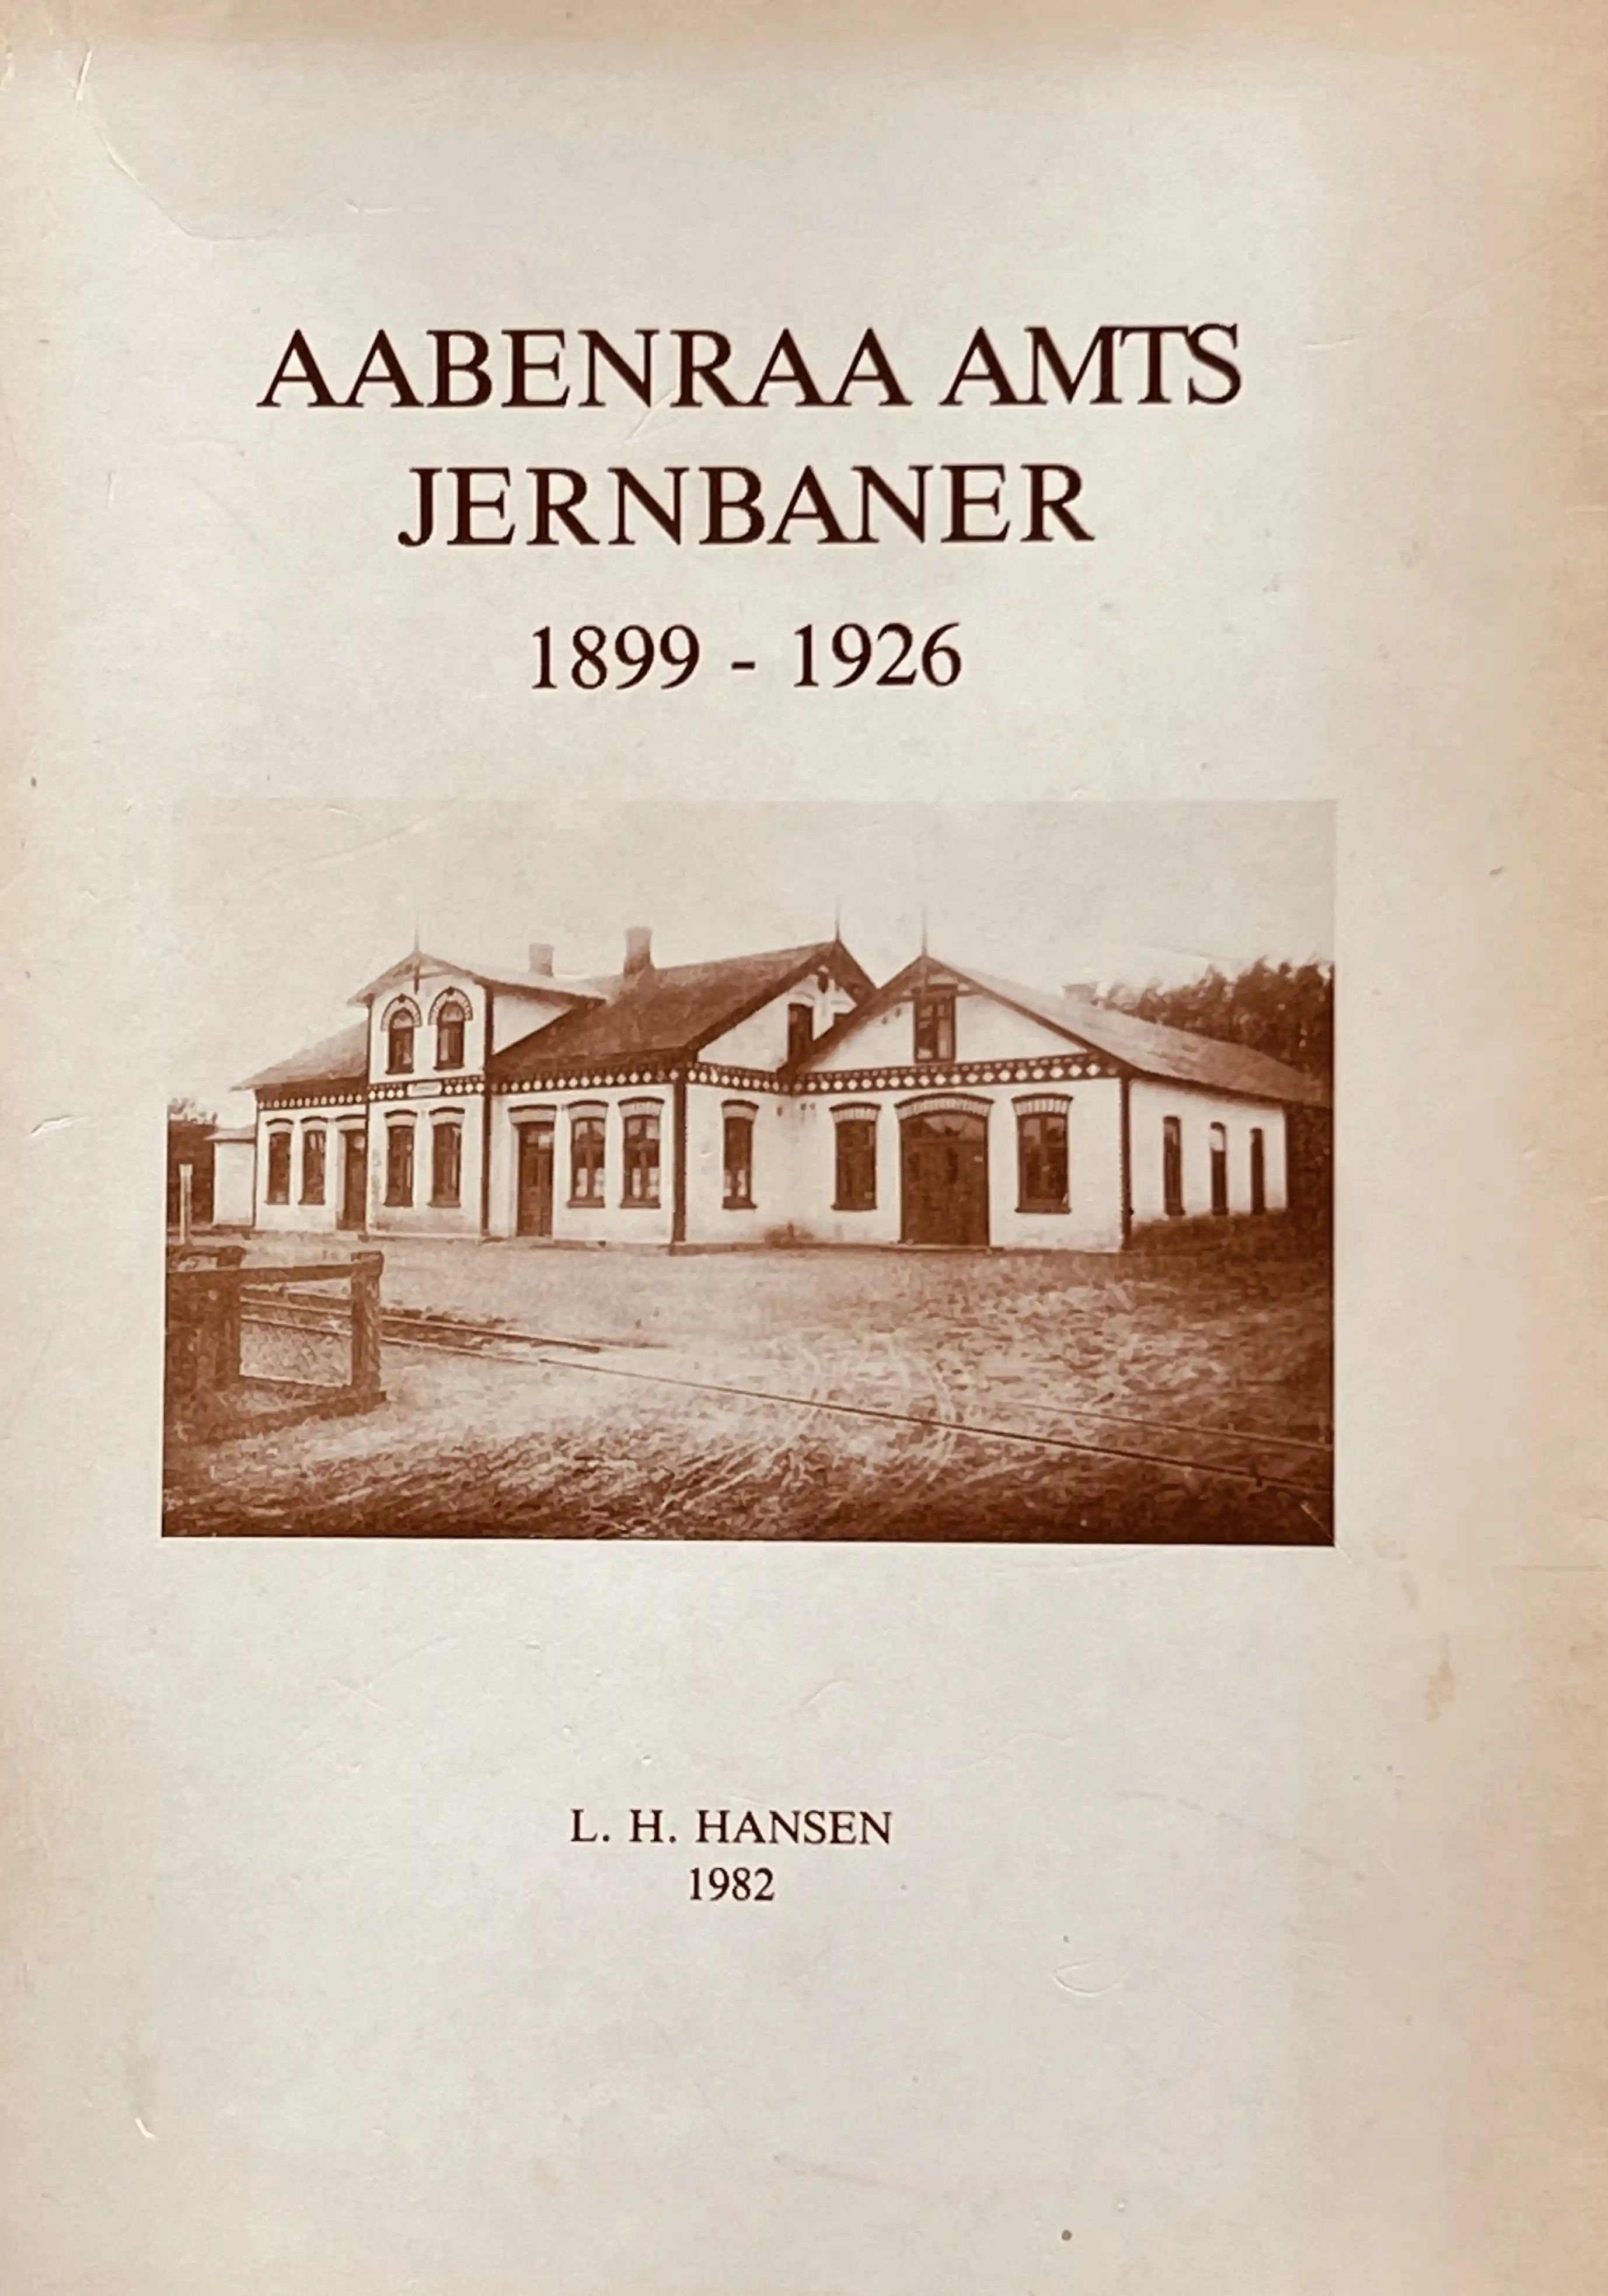 Aabenraa Amts Jernbaner 1899-1926